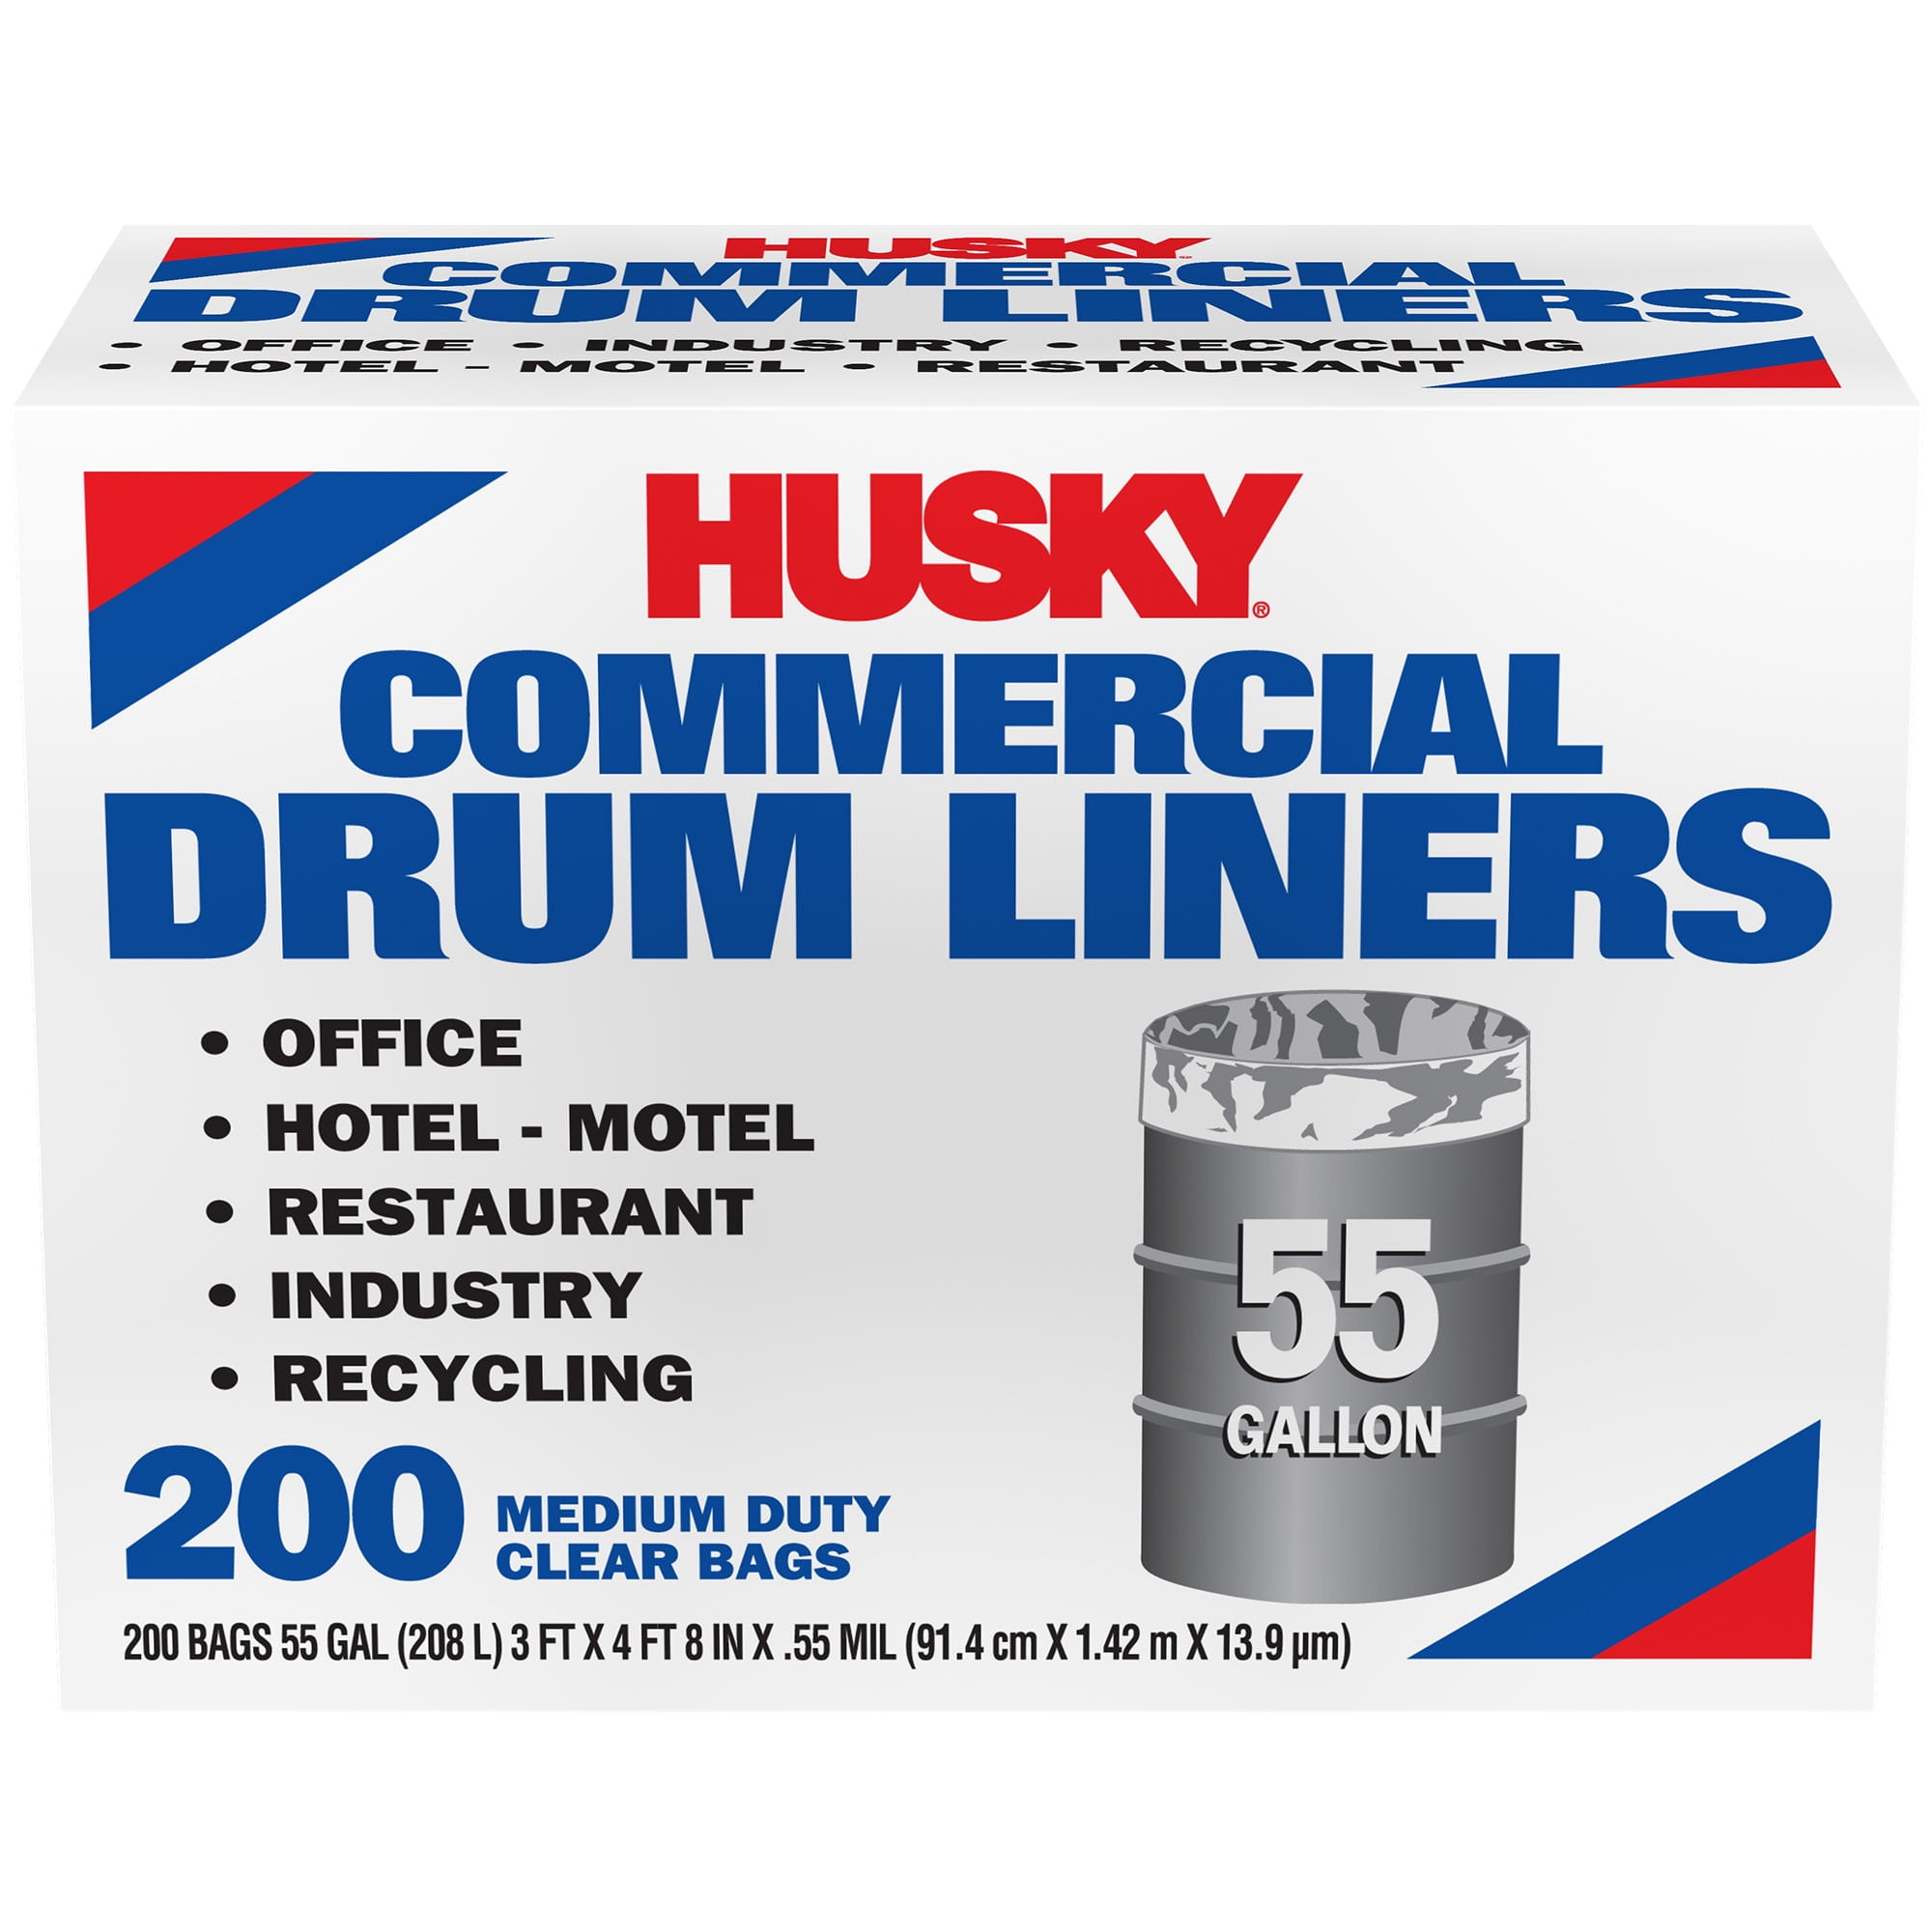  Husky HKK55030B True Tie 55-Gallon Drum Liners, 30